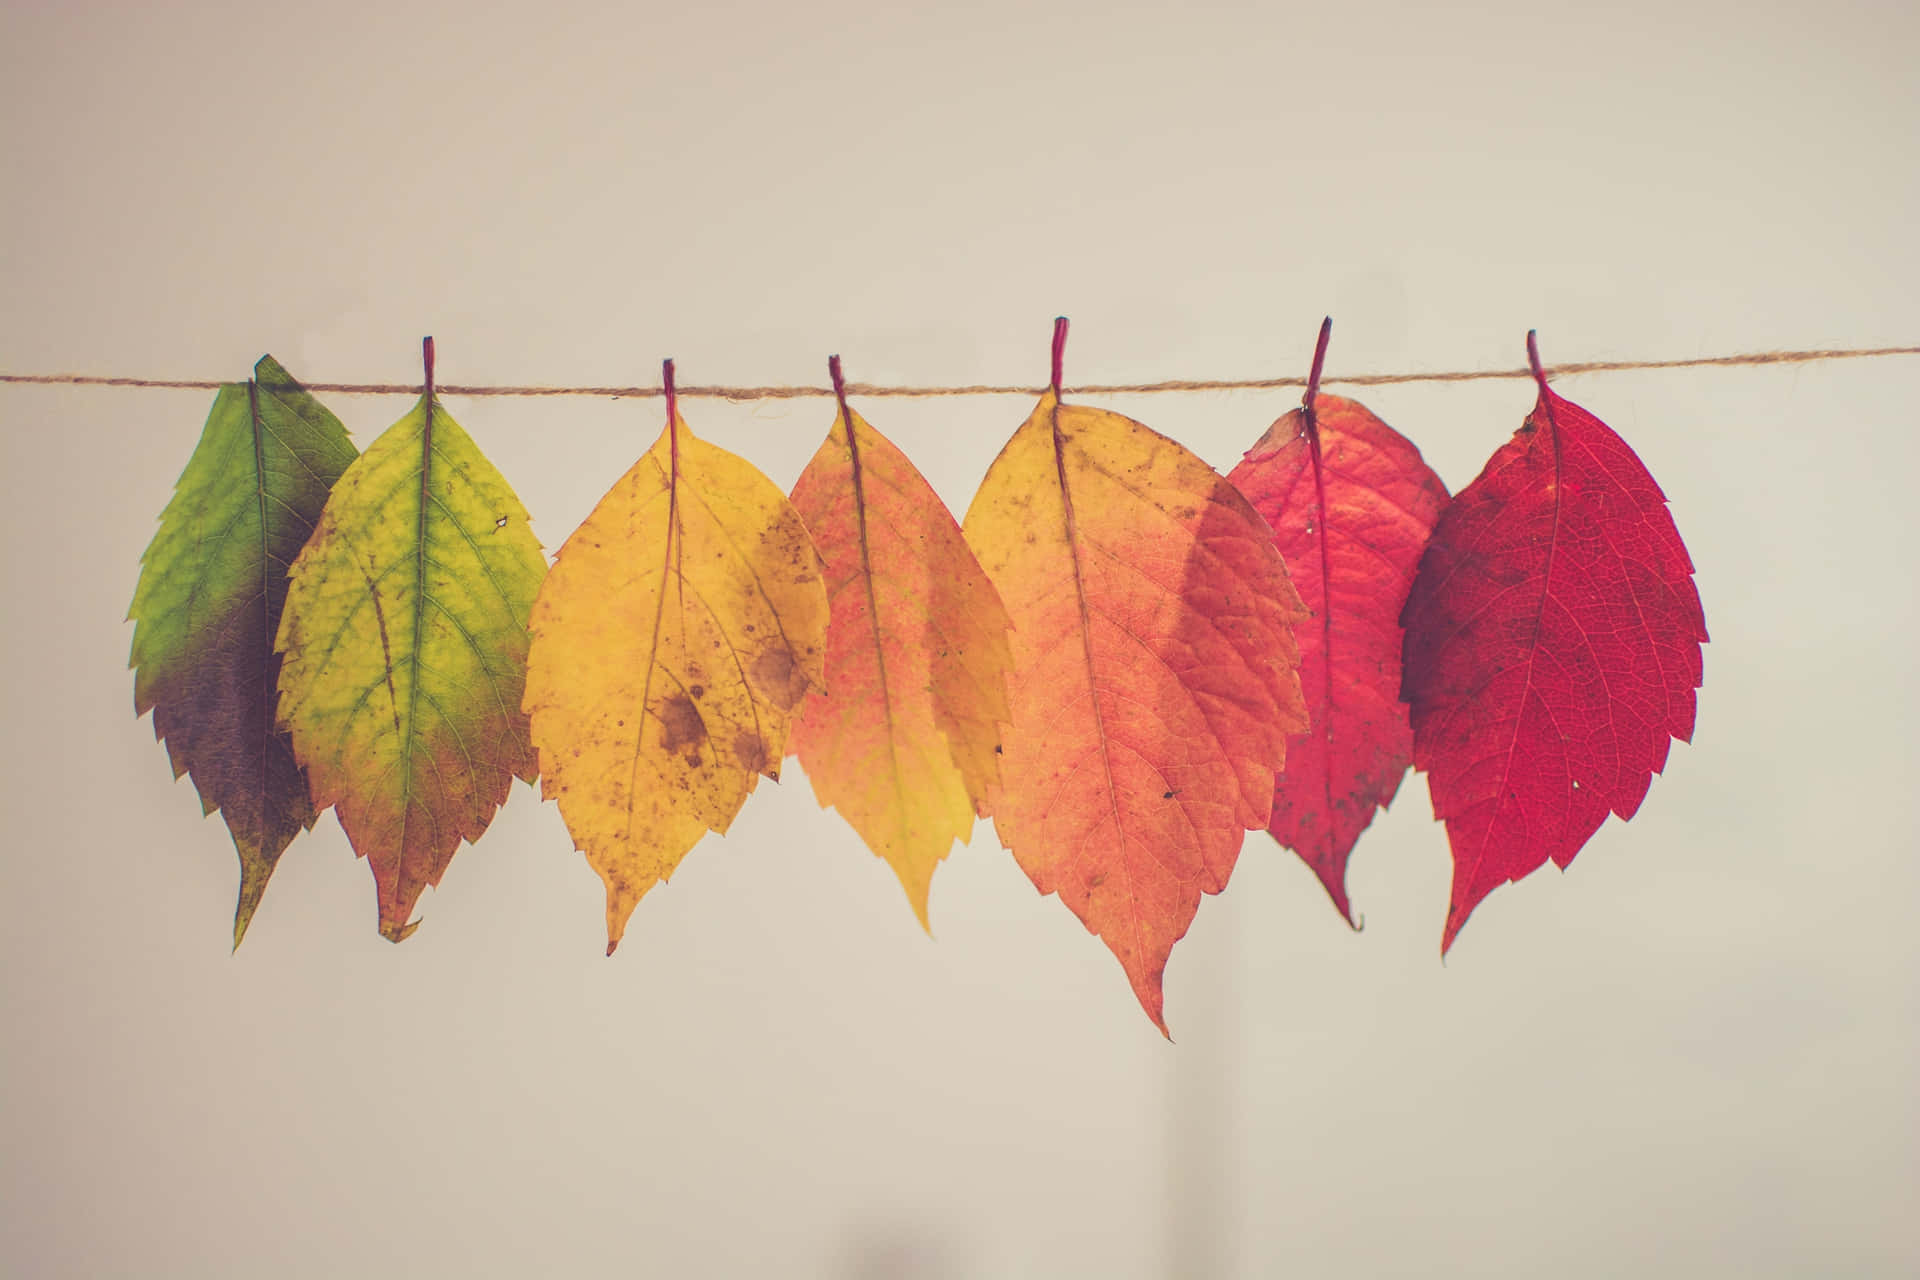 Unadolce Scena D'autunno Con Foglie Colorate, Una Zucca Bianca E Un Piccolo Amico Peloso. Sfondo